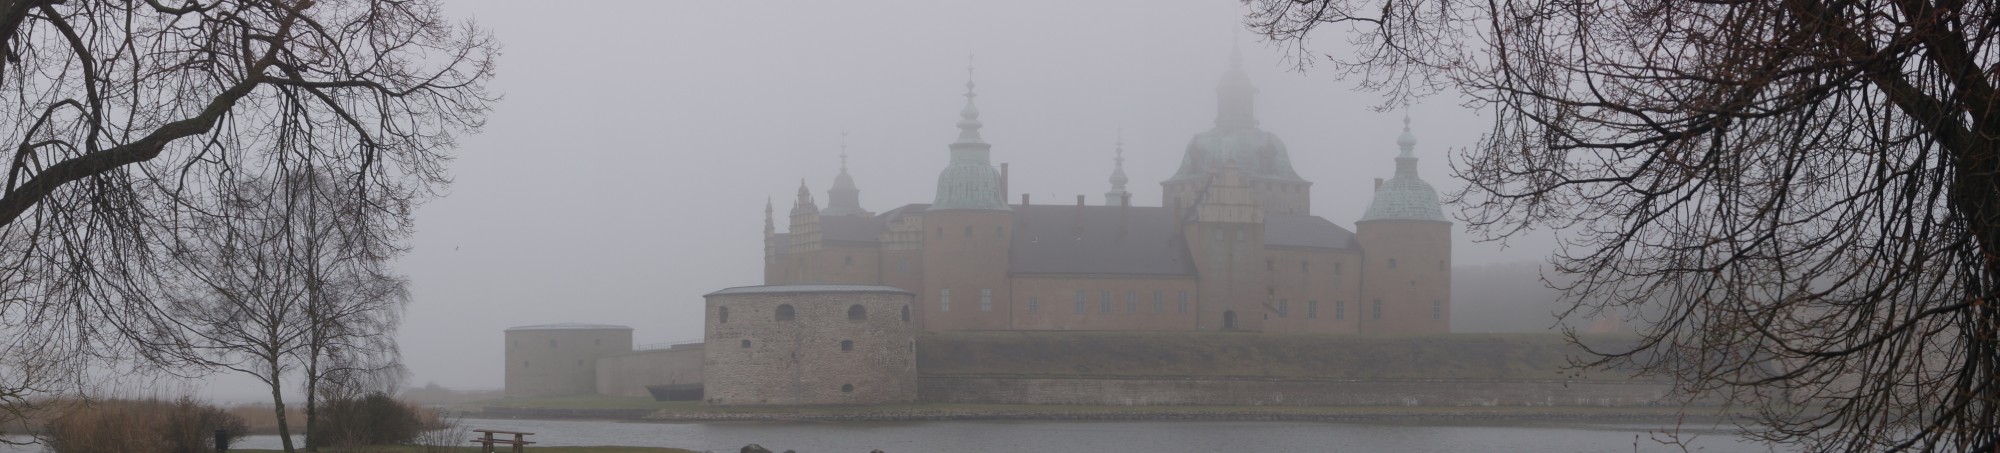 Kalmar castle covered in fog 03